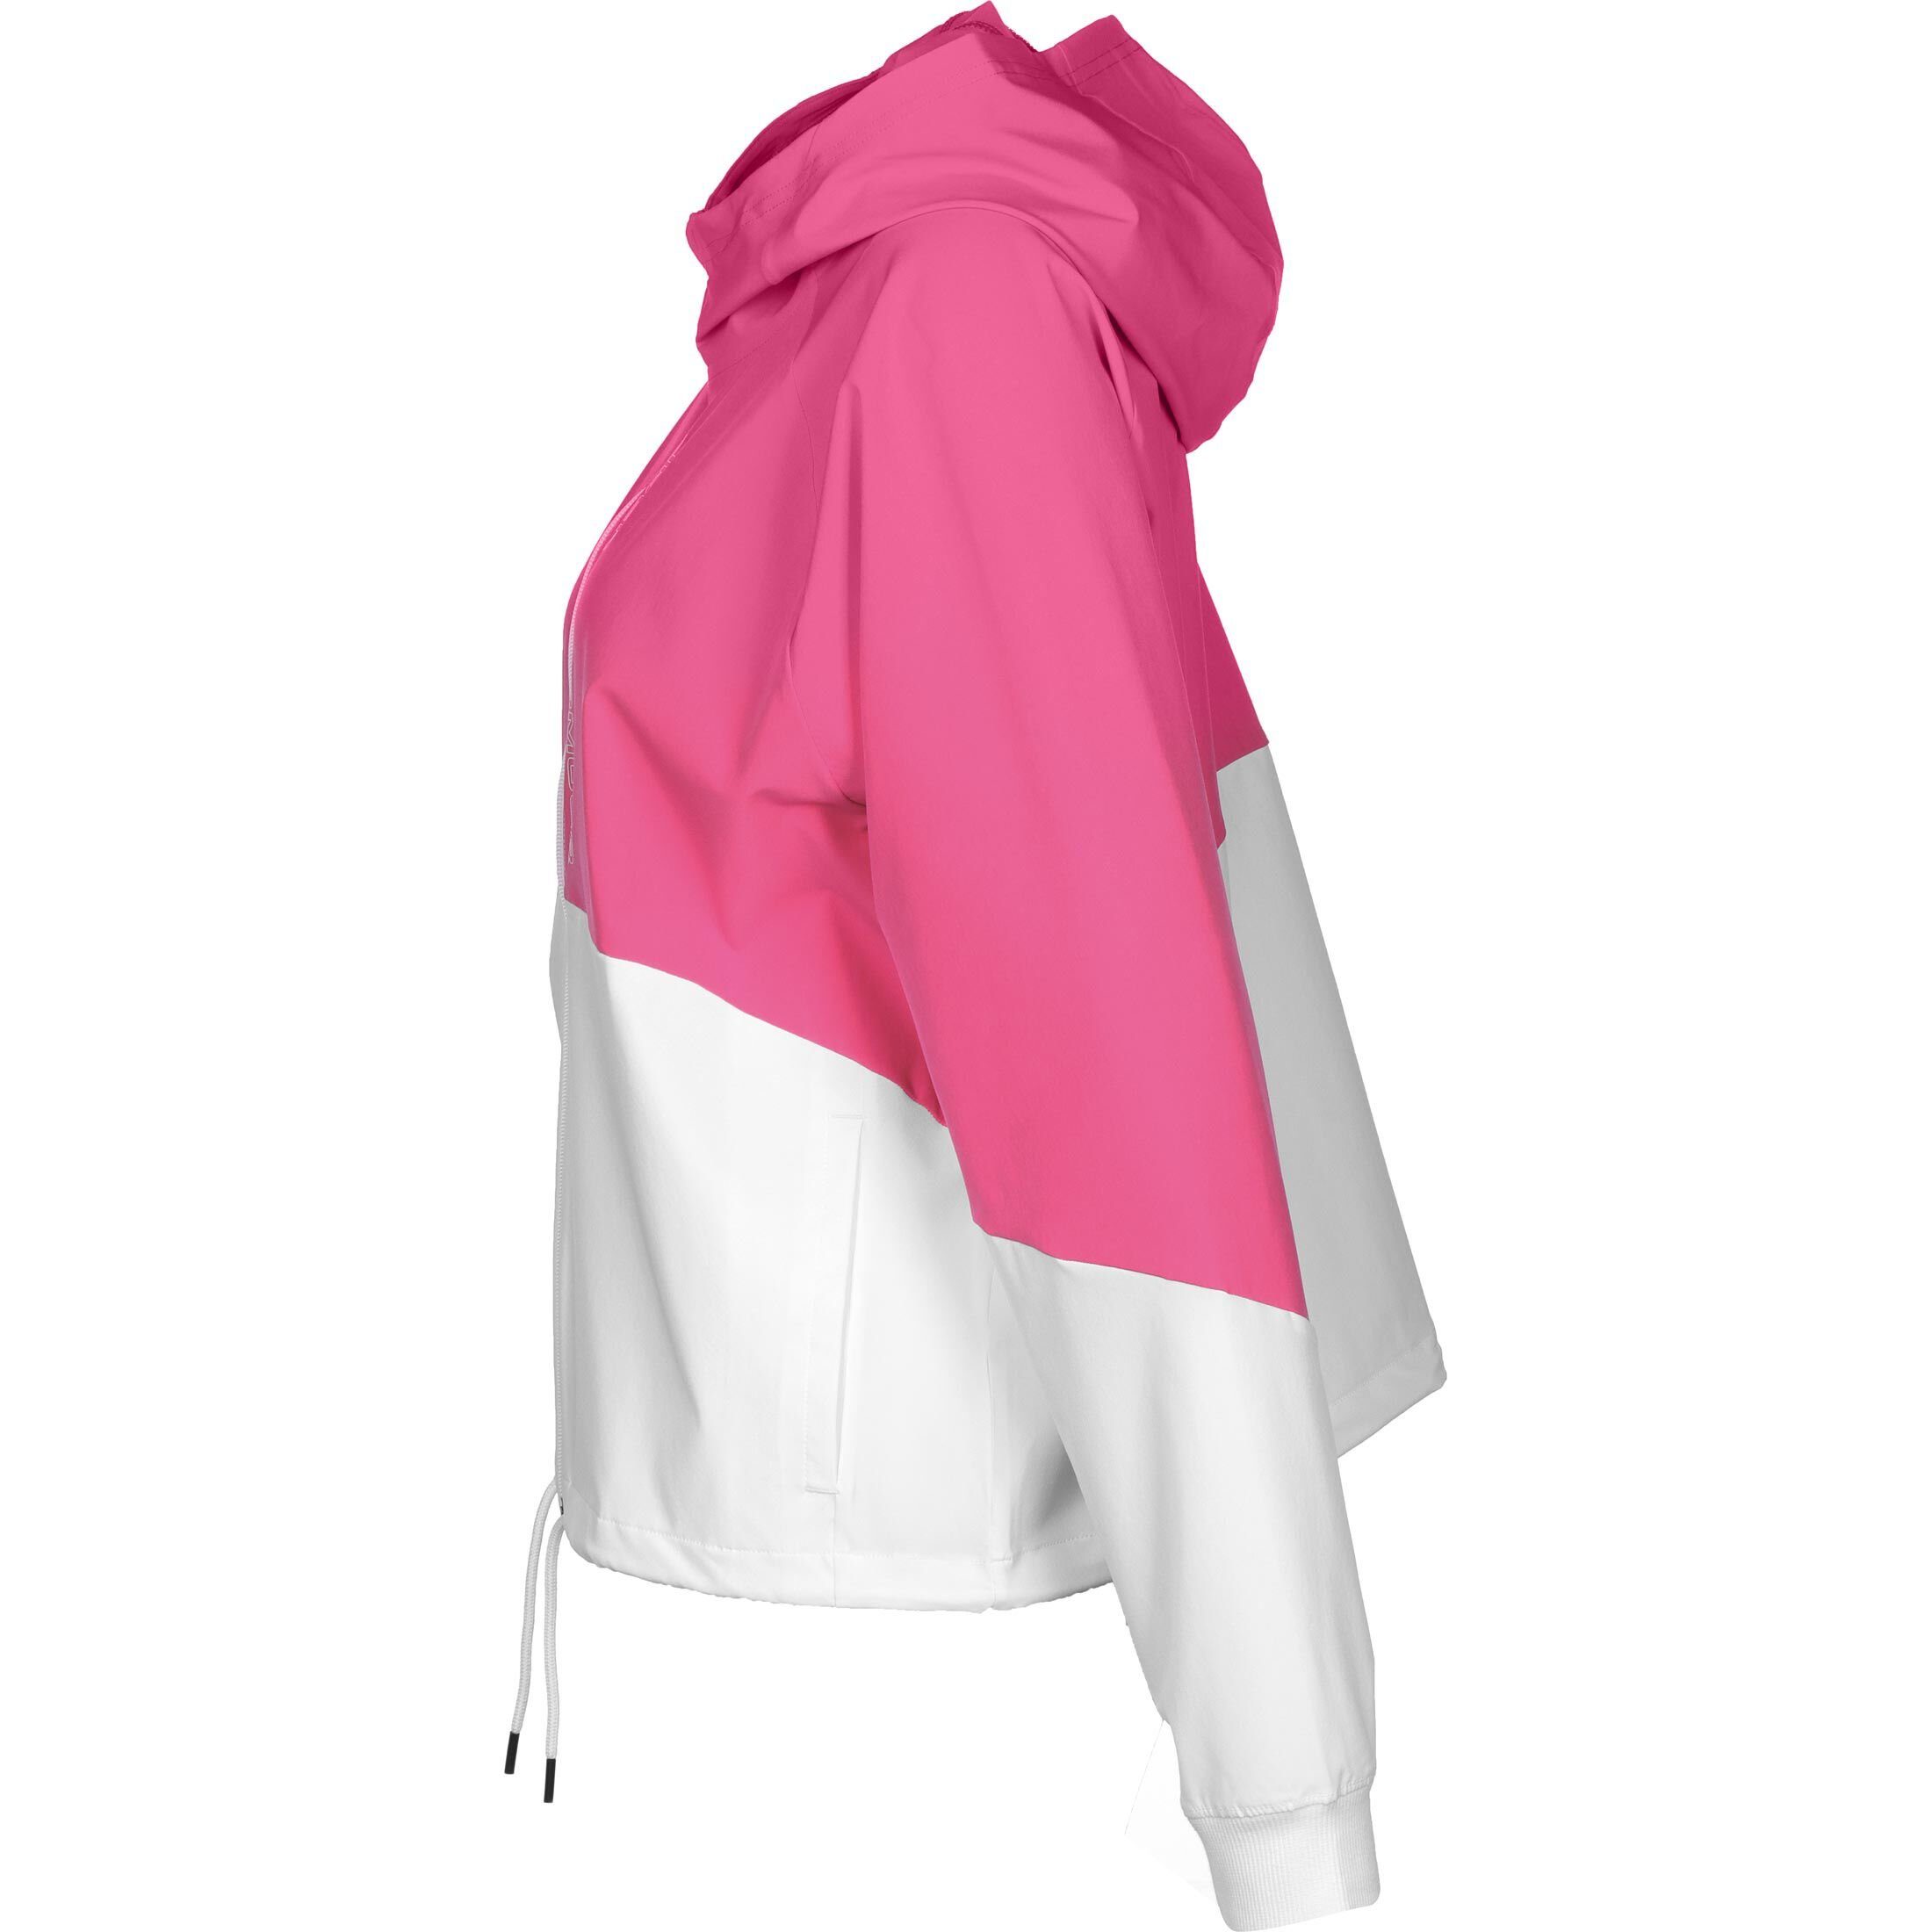 Under Armour® Trainingsjacke Woven Jacke Damen pink / weiß